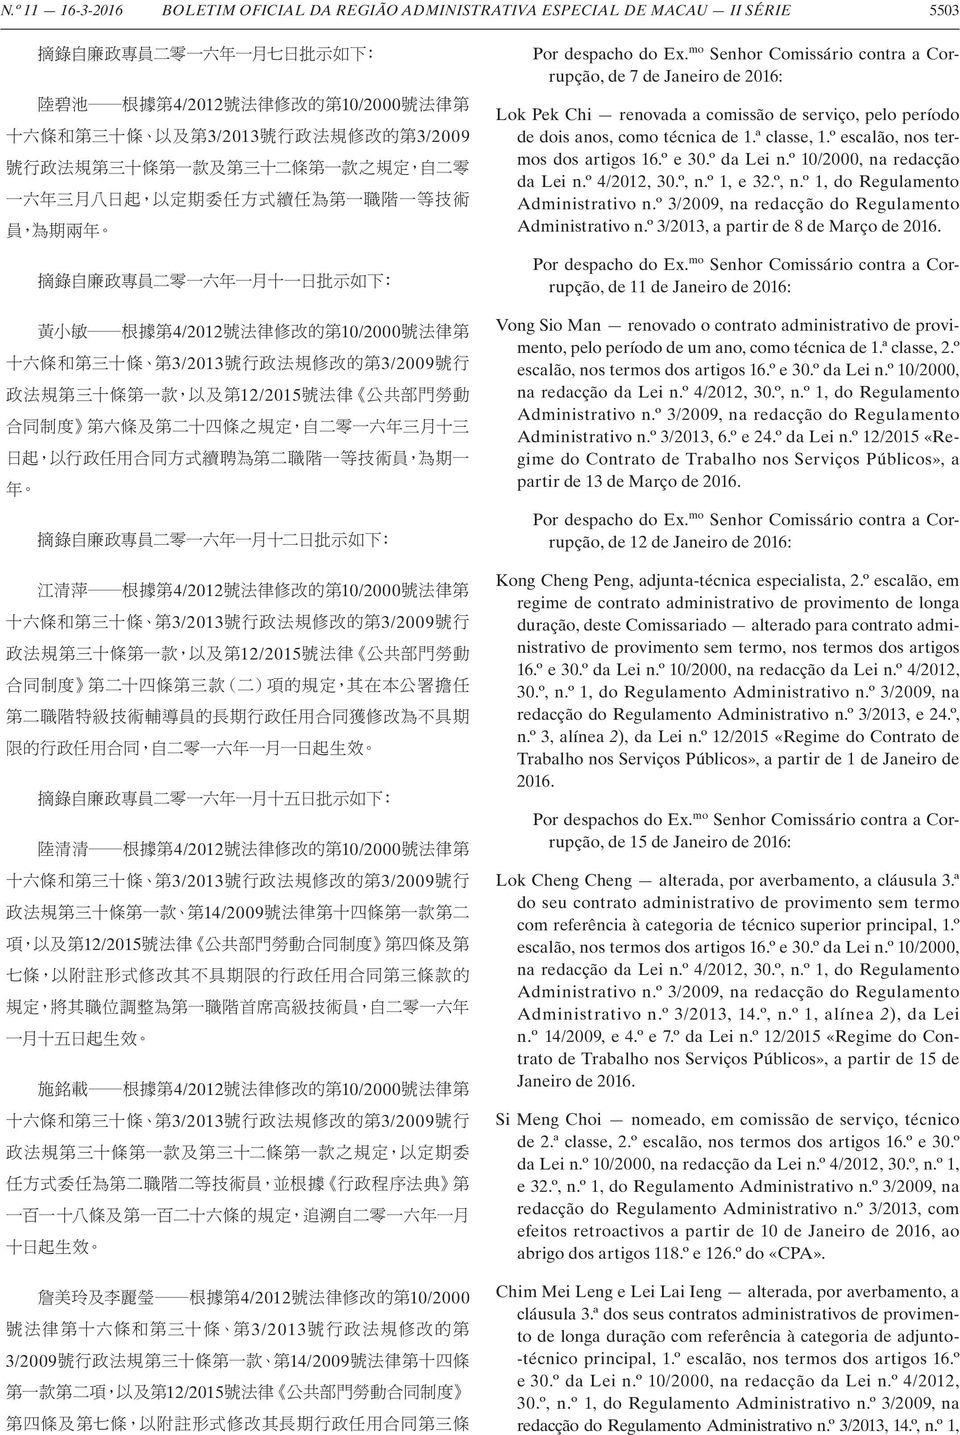 mo Senhor Comissário contra a Corrupção, de 7 de Janeiro de 2016: Lok Pek Chi renovada a comissão de serviço, pelo período de dois anos, como técnica de 1.ª classe,, nos termos dos artigos 16.º e 30.